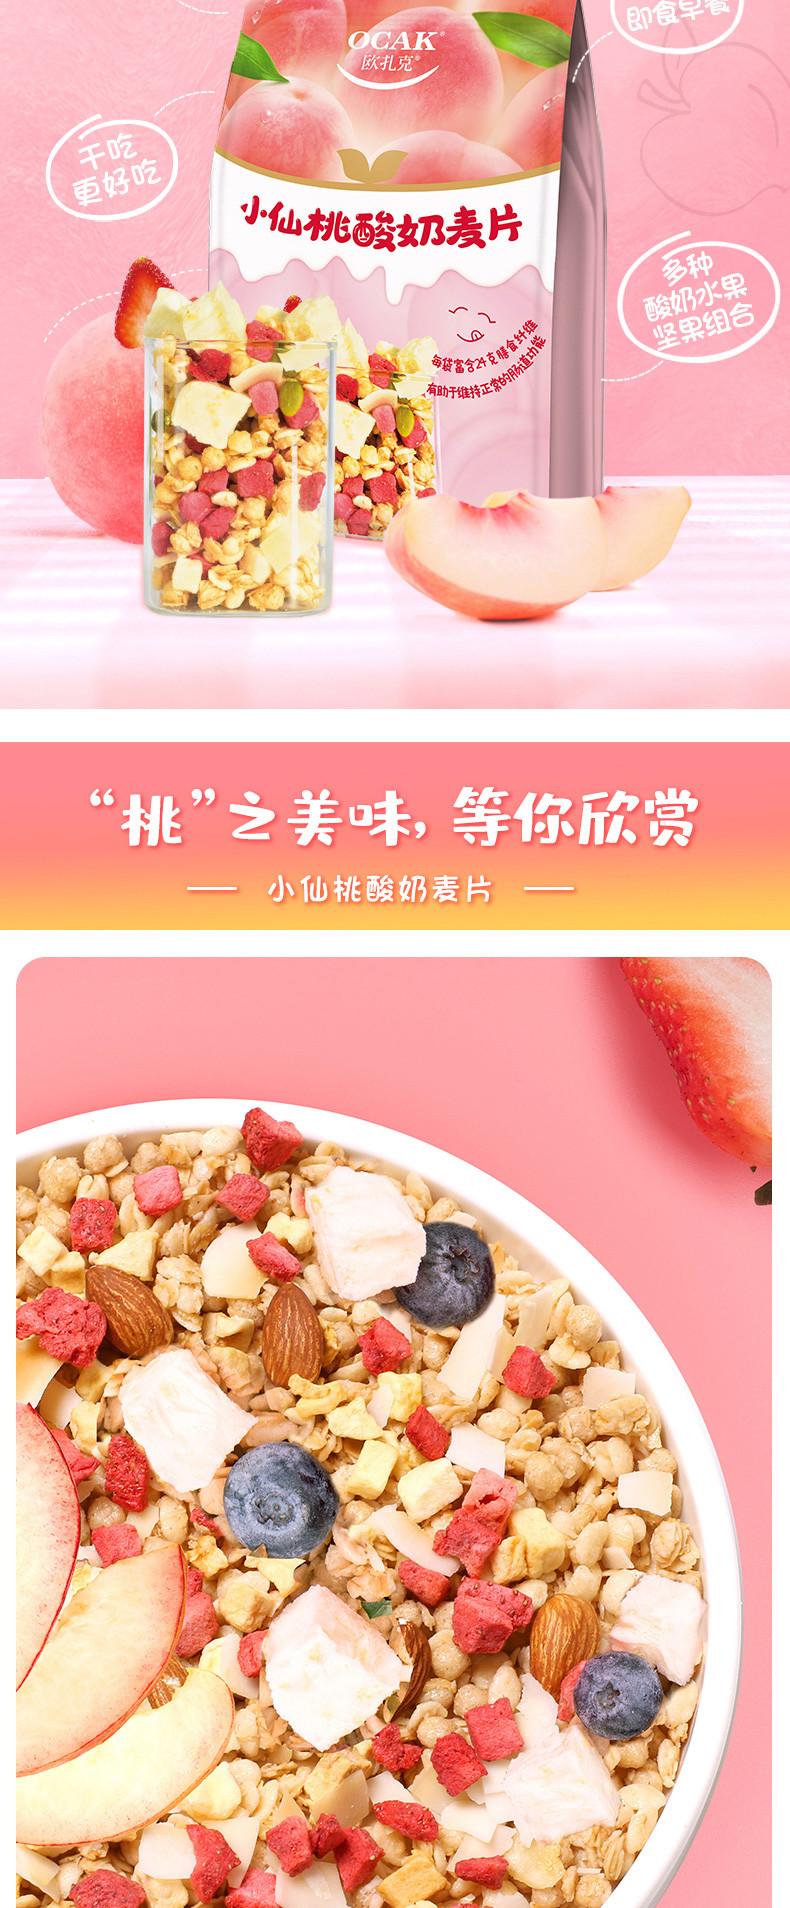 【战放实力】肖战同款欧扎克小仙桃酸奶麦片400g 即食谷物营养早餐燕麦脆